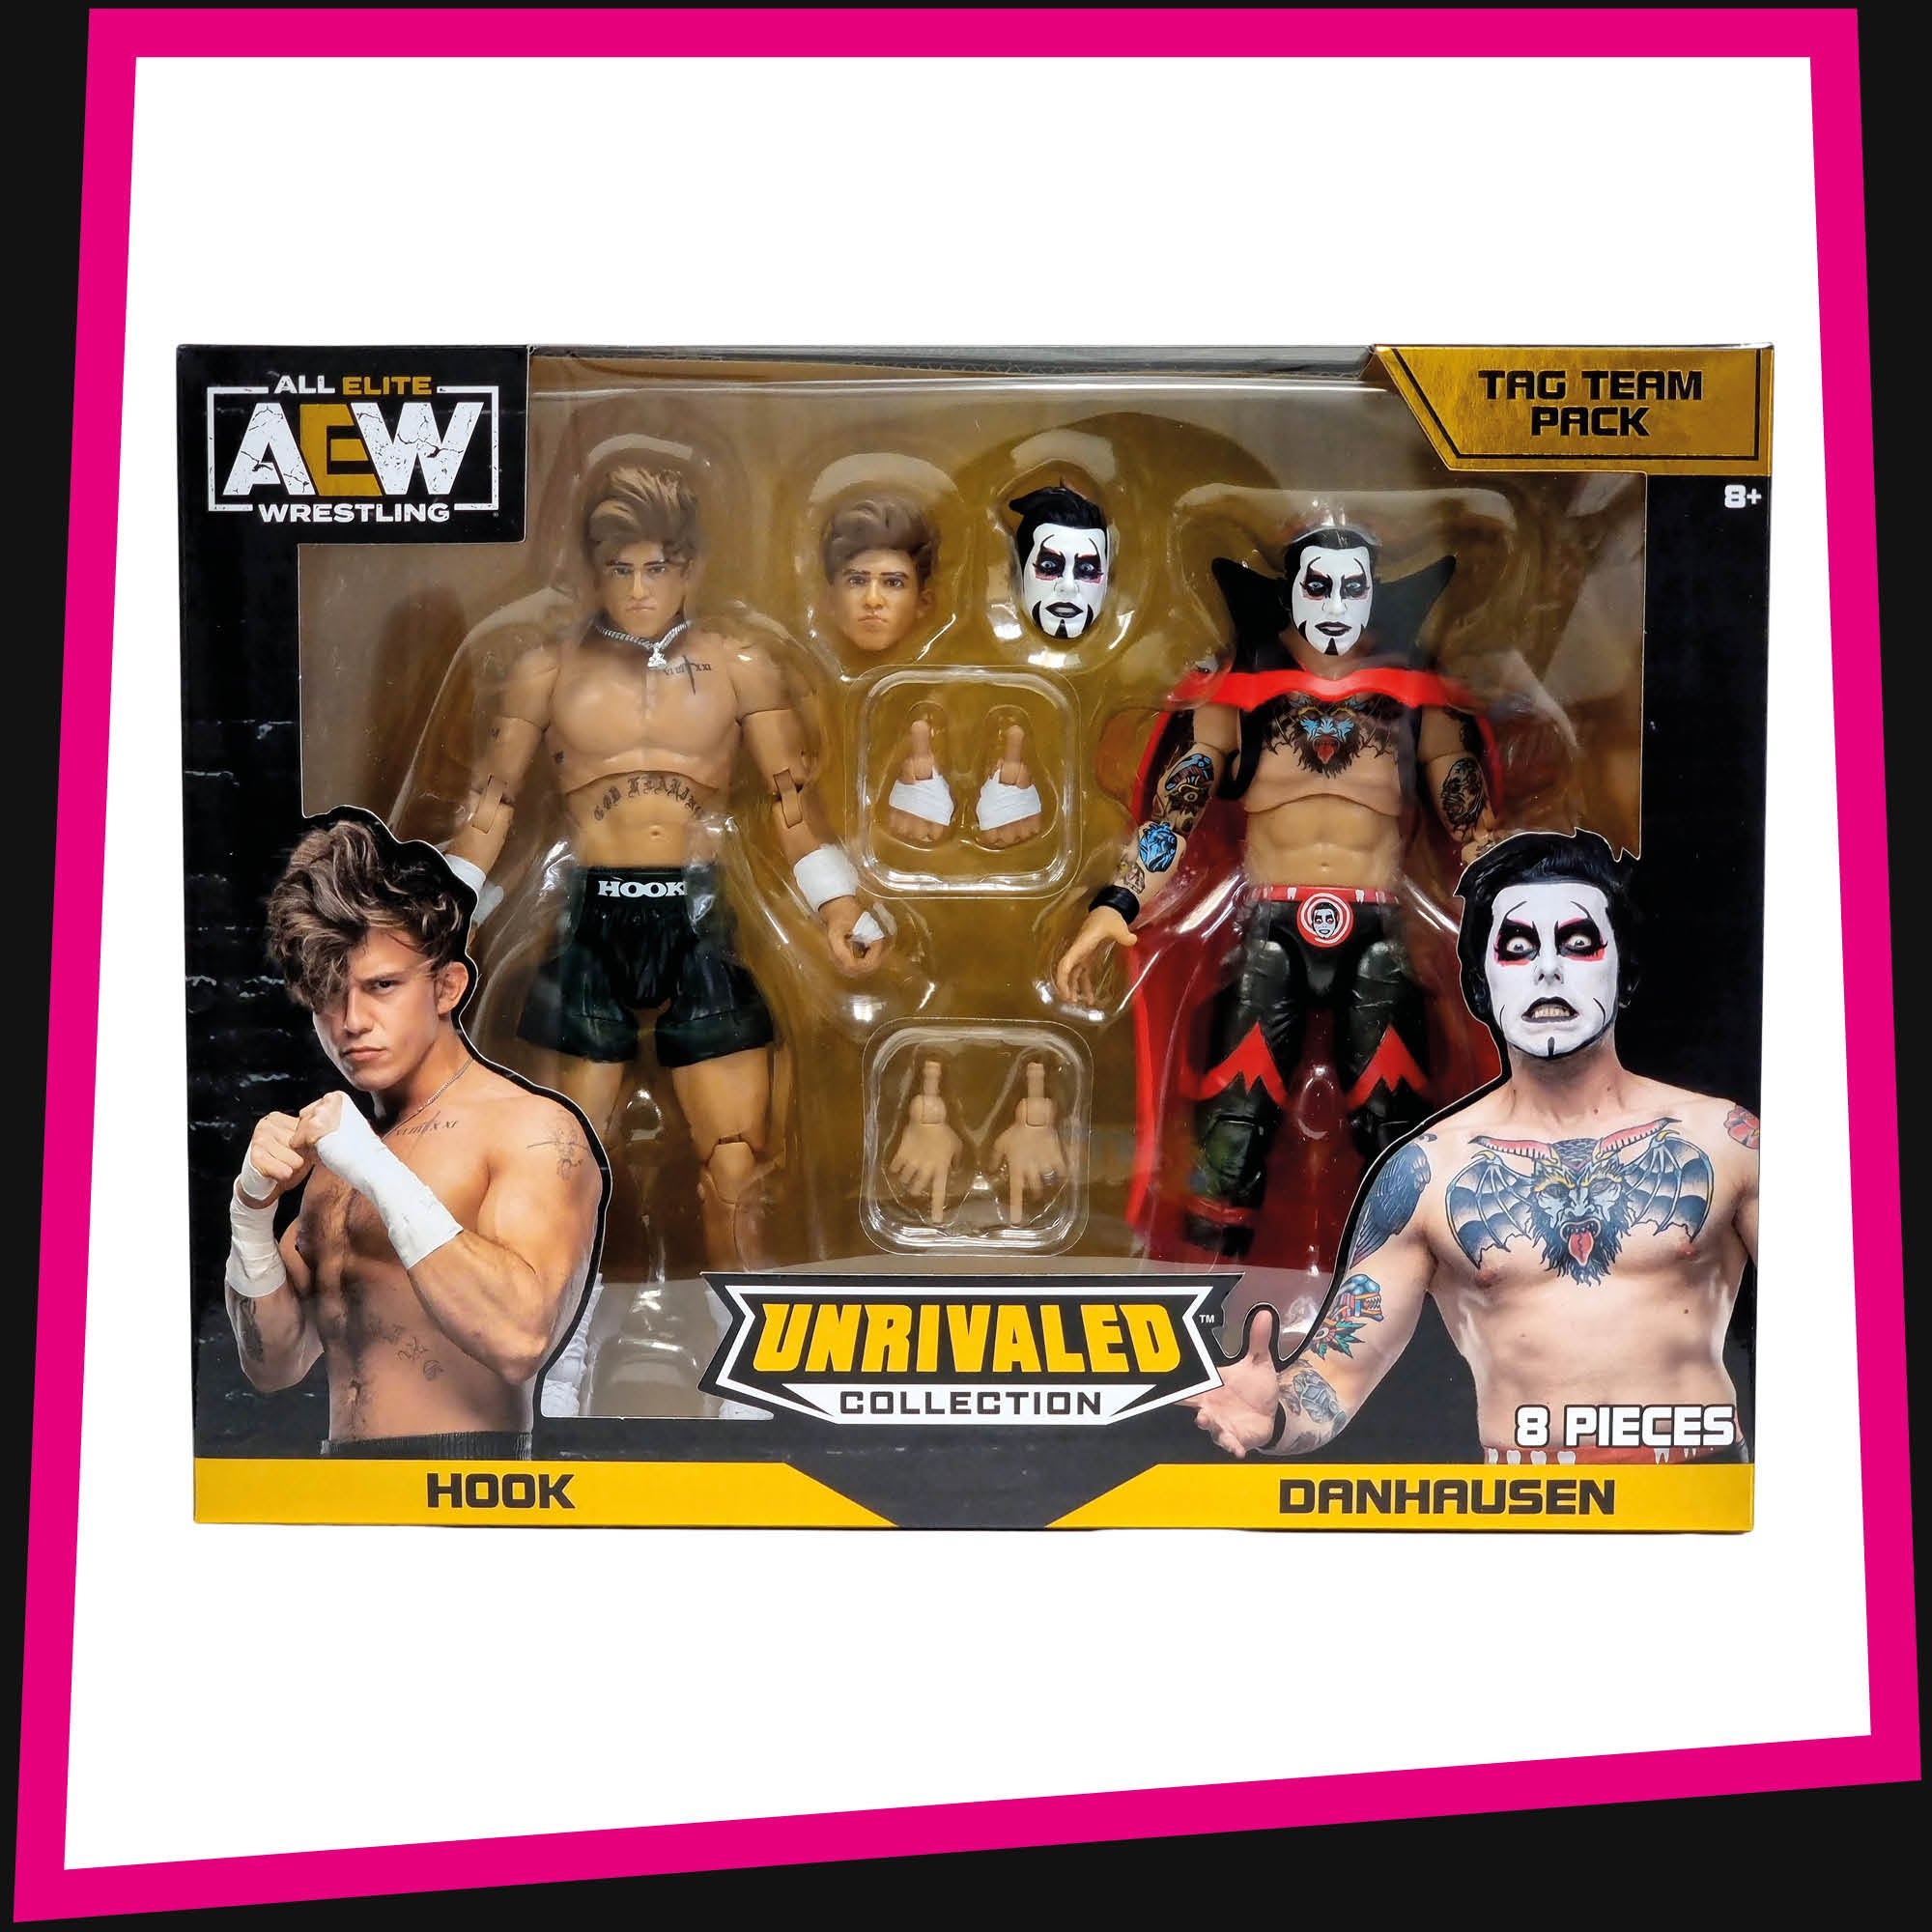 2-Pack Tag Team AEW Danhausen & Hook Elite Wrestling Action Figure WWE  Figurines